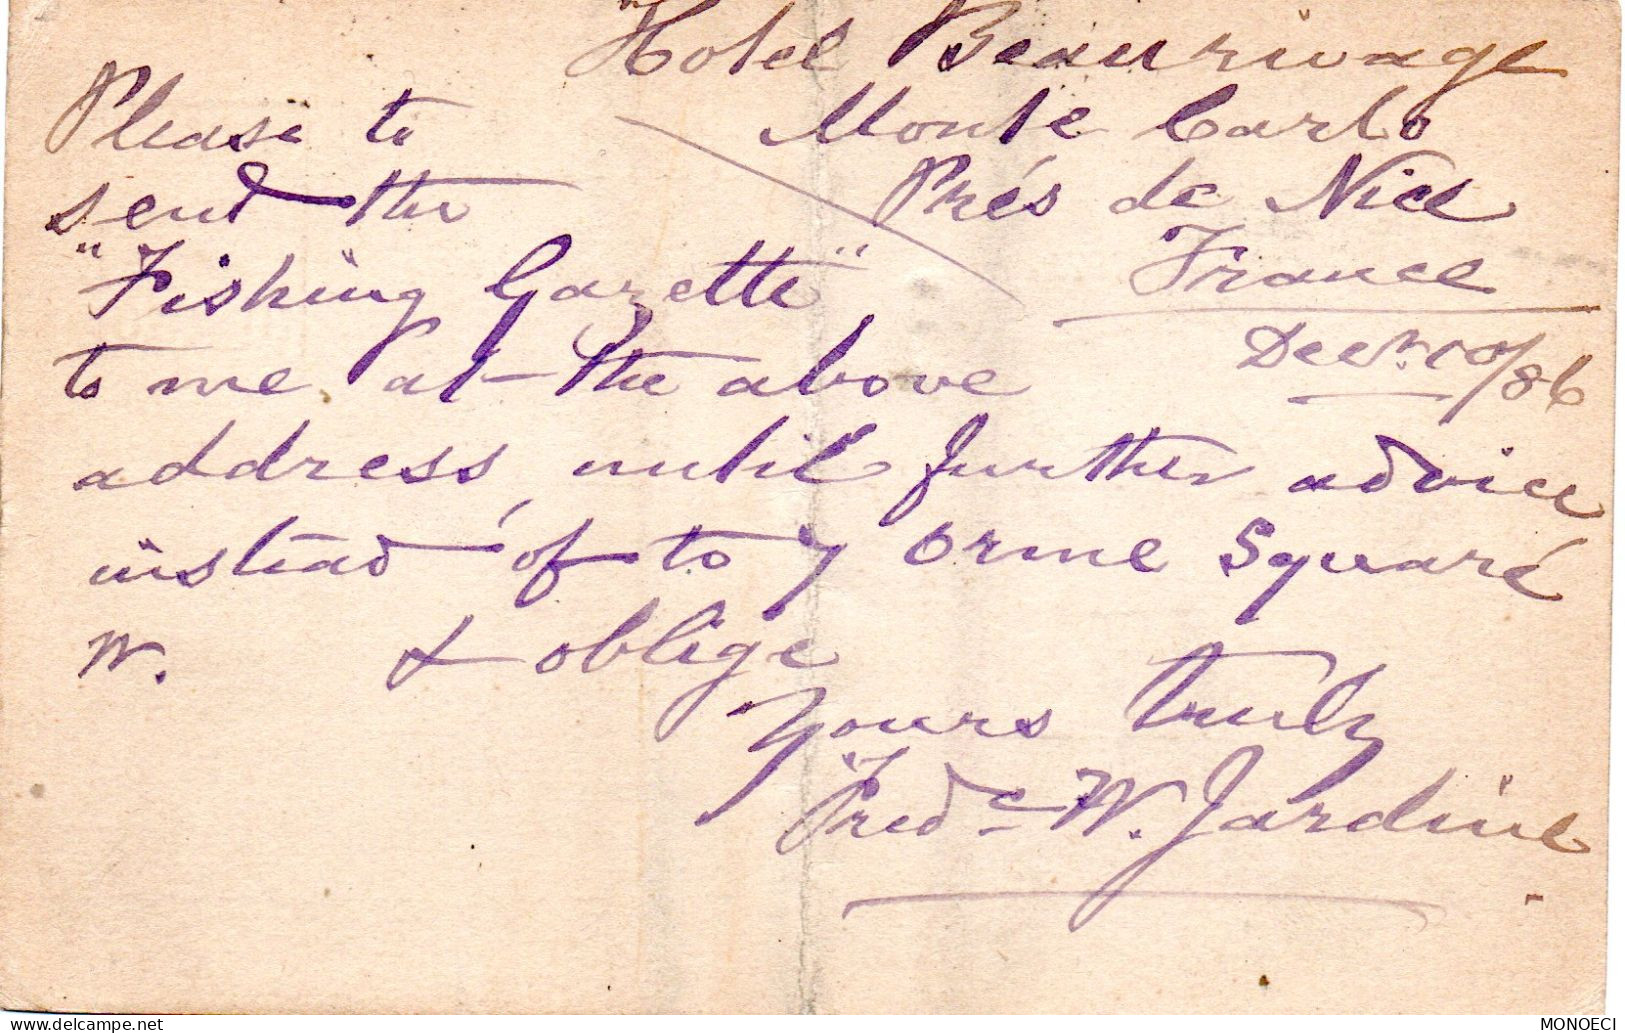 MONACO -- MONTE CARLO -- Entier Postal -- Carte Postale -- Prince Charles III -- 10 C. Brun Sur Lilas (1887) - Entiers Postaux